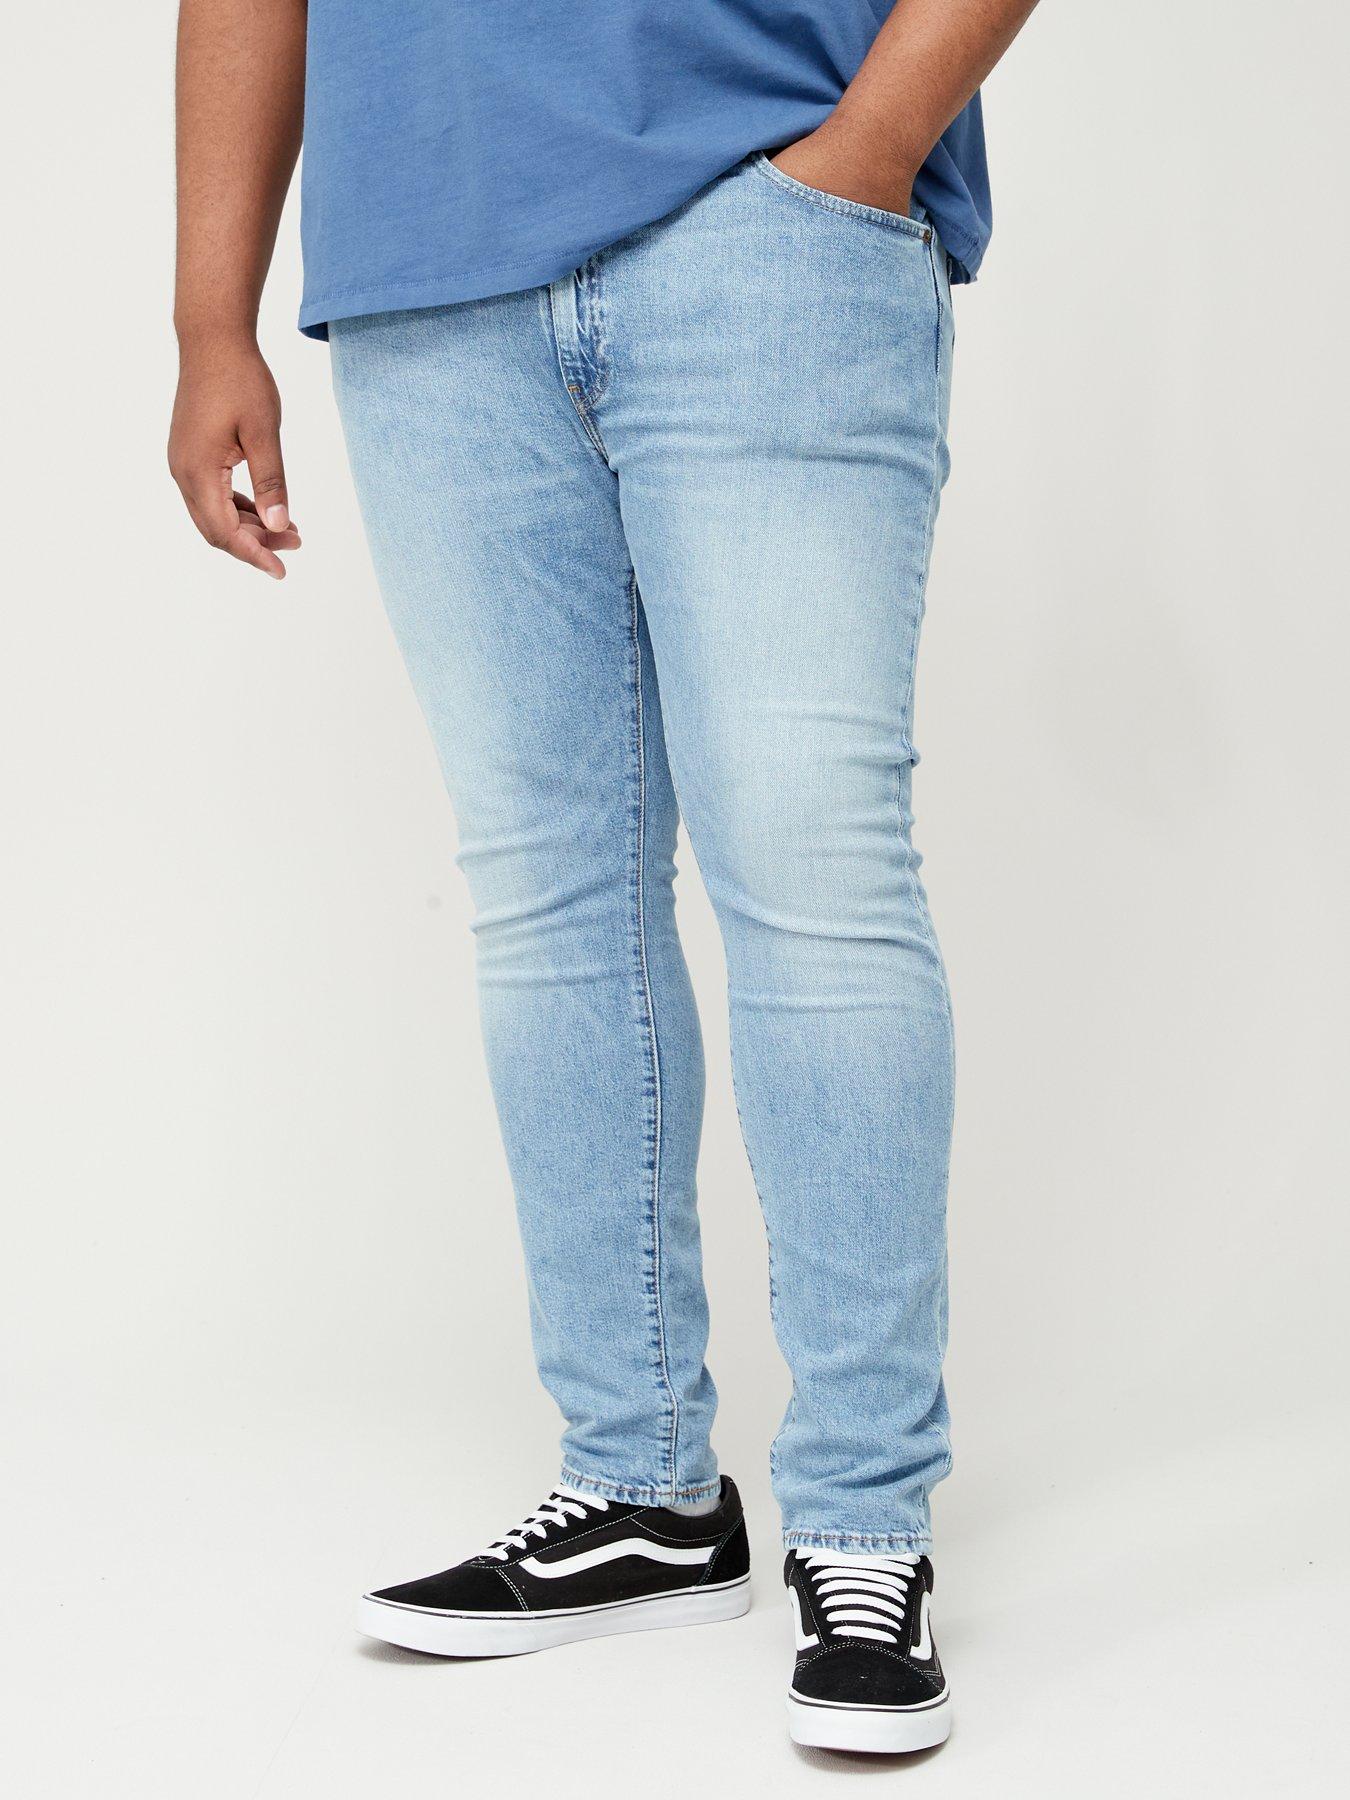 Levi's Levi's Big & Tall 512 Slim Taper Fit Jeans - Light Wash 